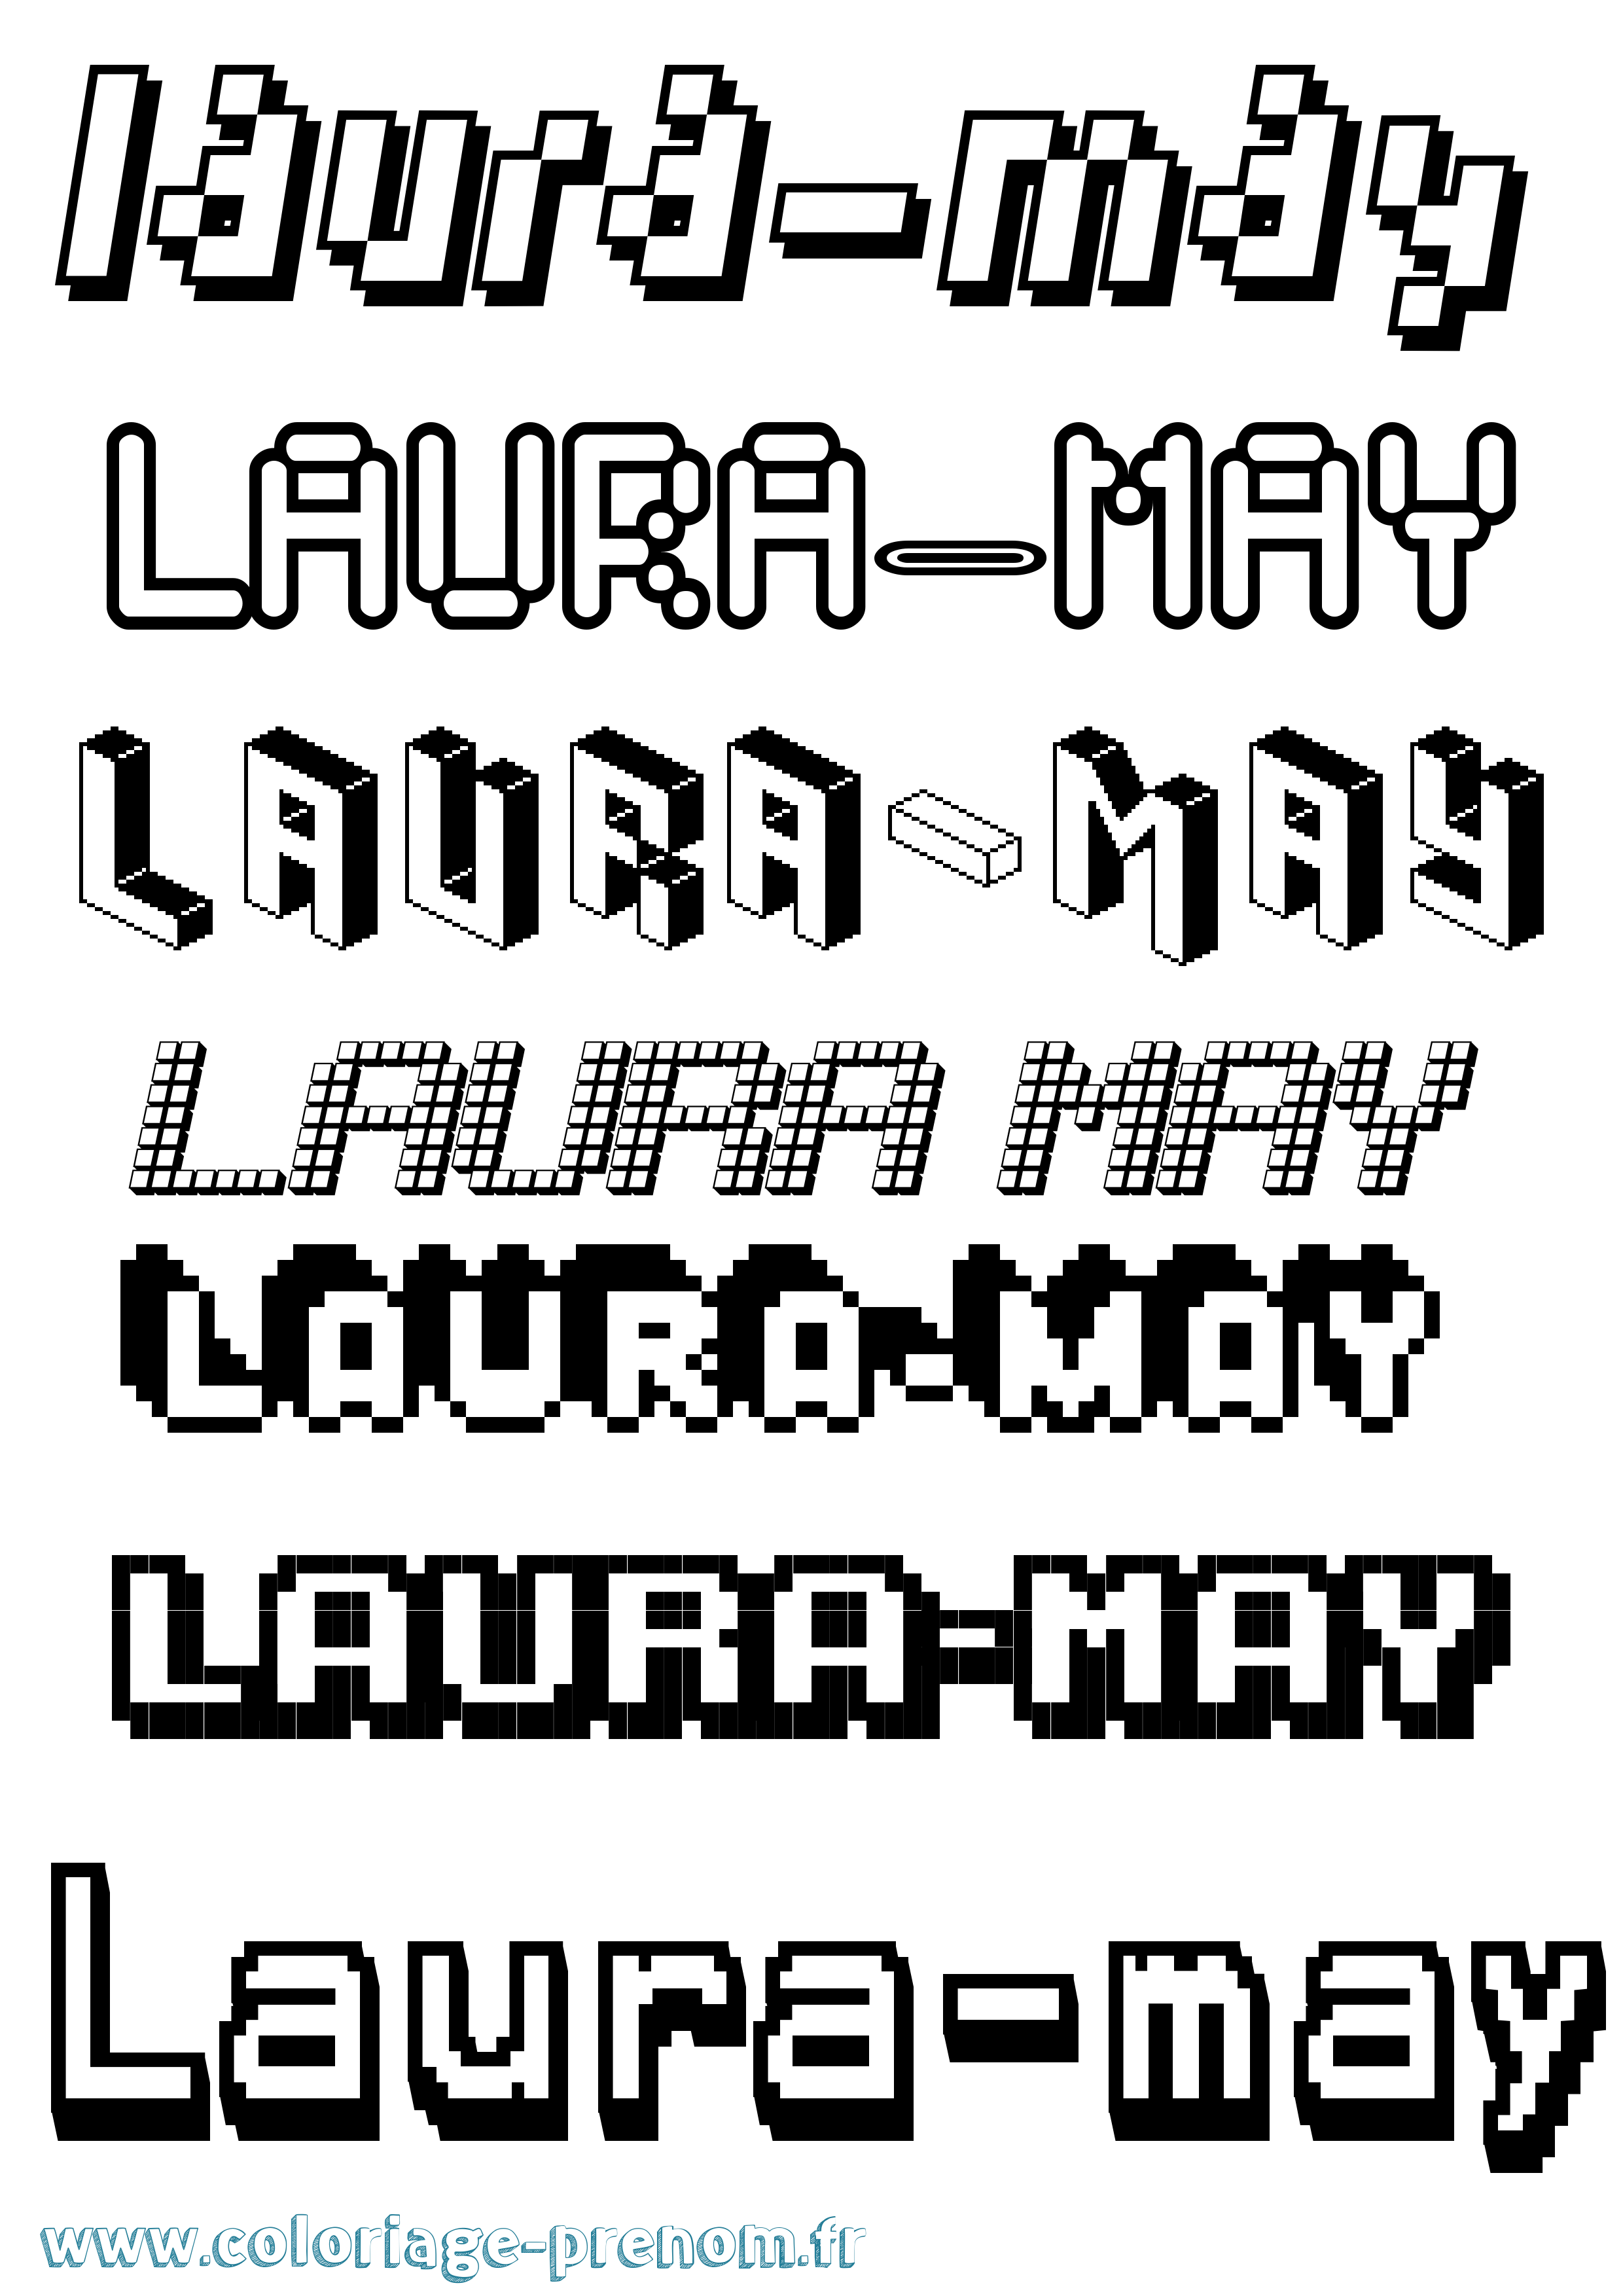 Coloriage prénom Laura-May Pixel